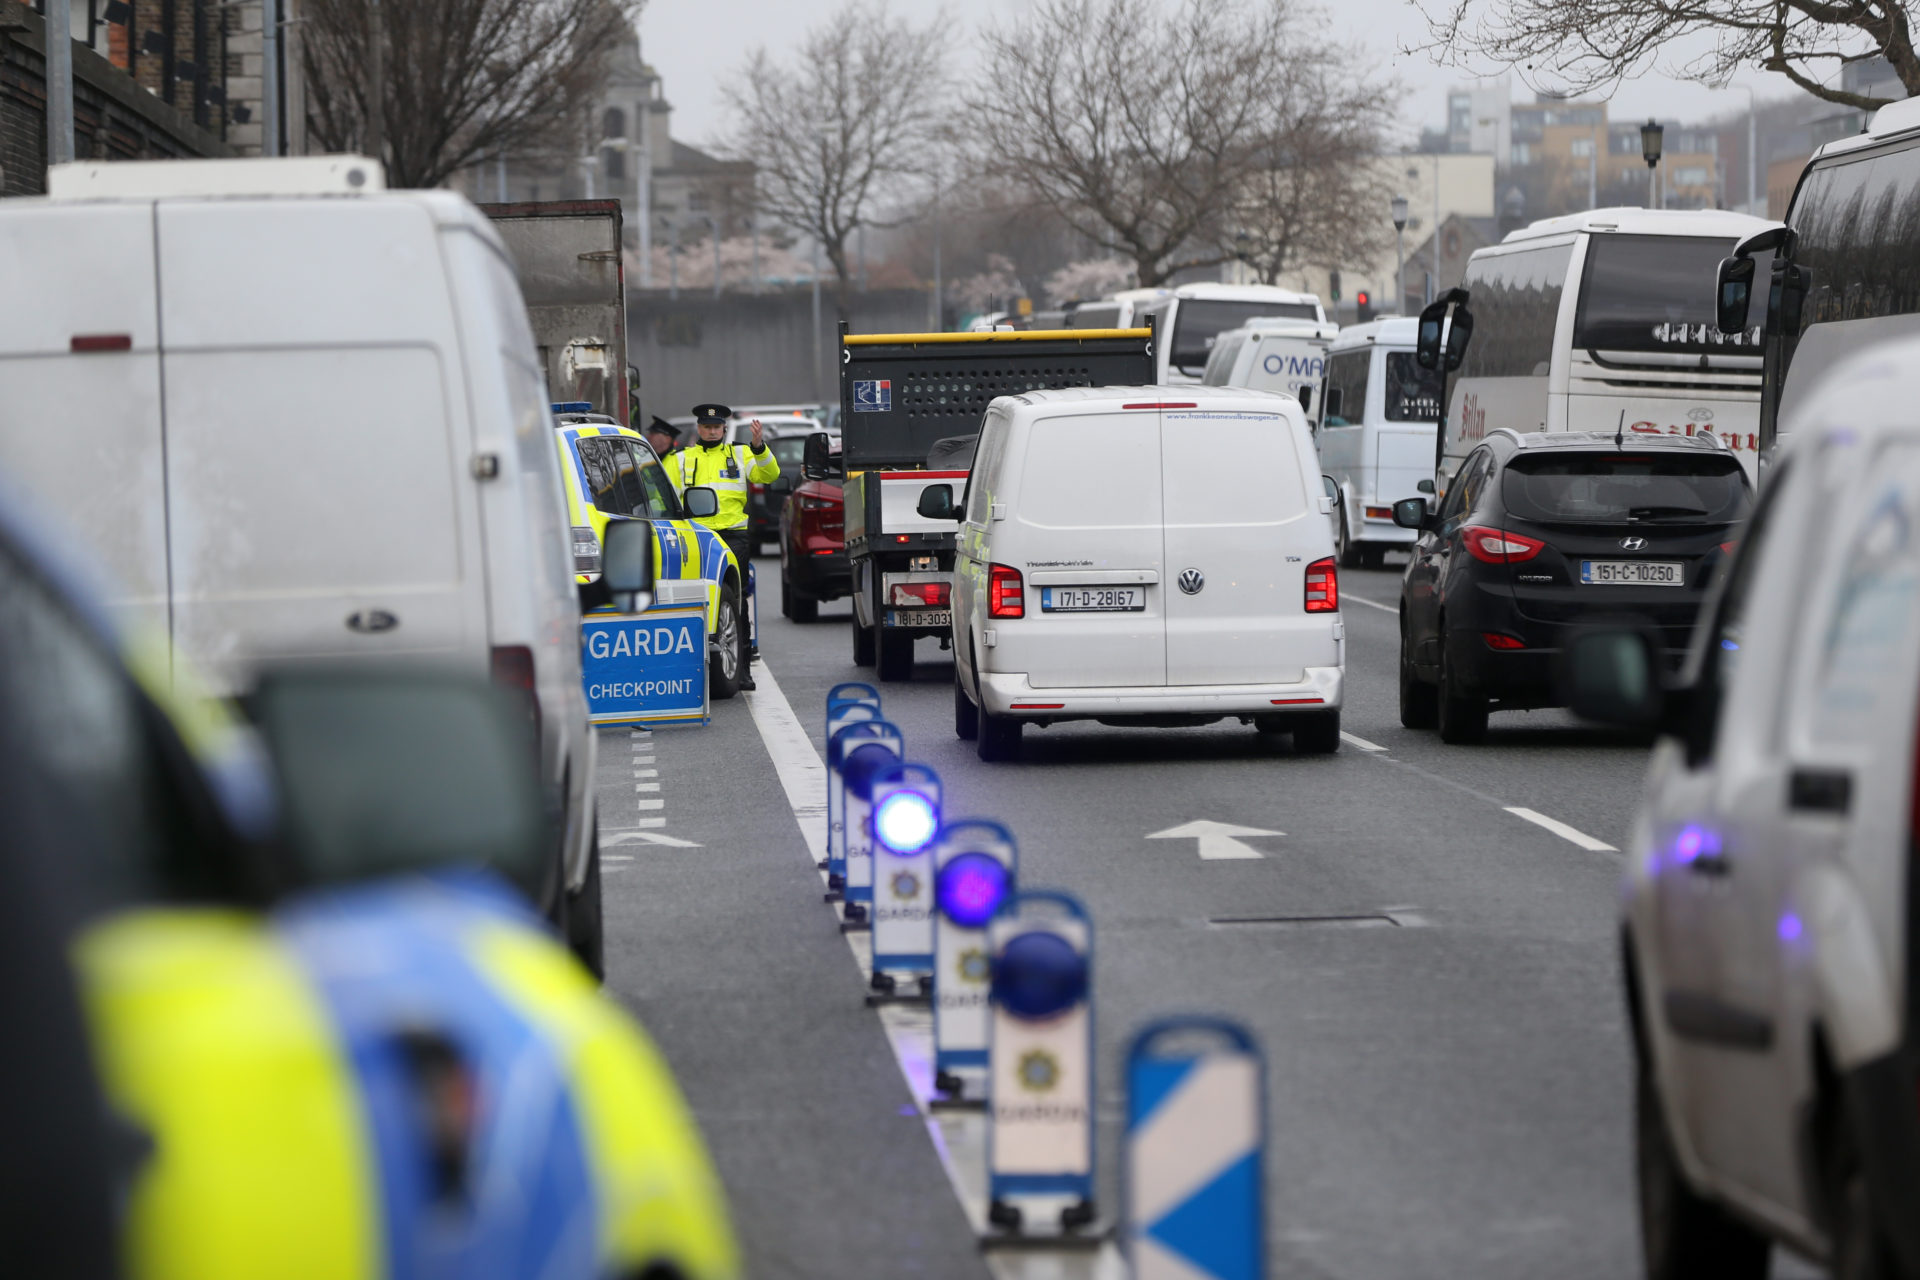 Gardaí carrying out breath and drug roadside tests, 14-03-2019. Image: Sam Boal/RollingNews